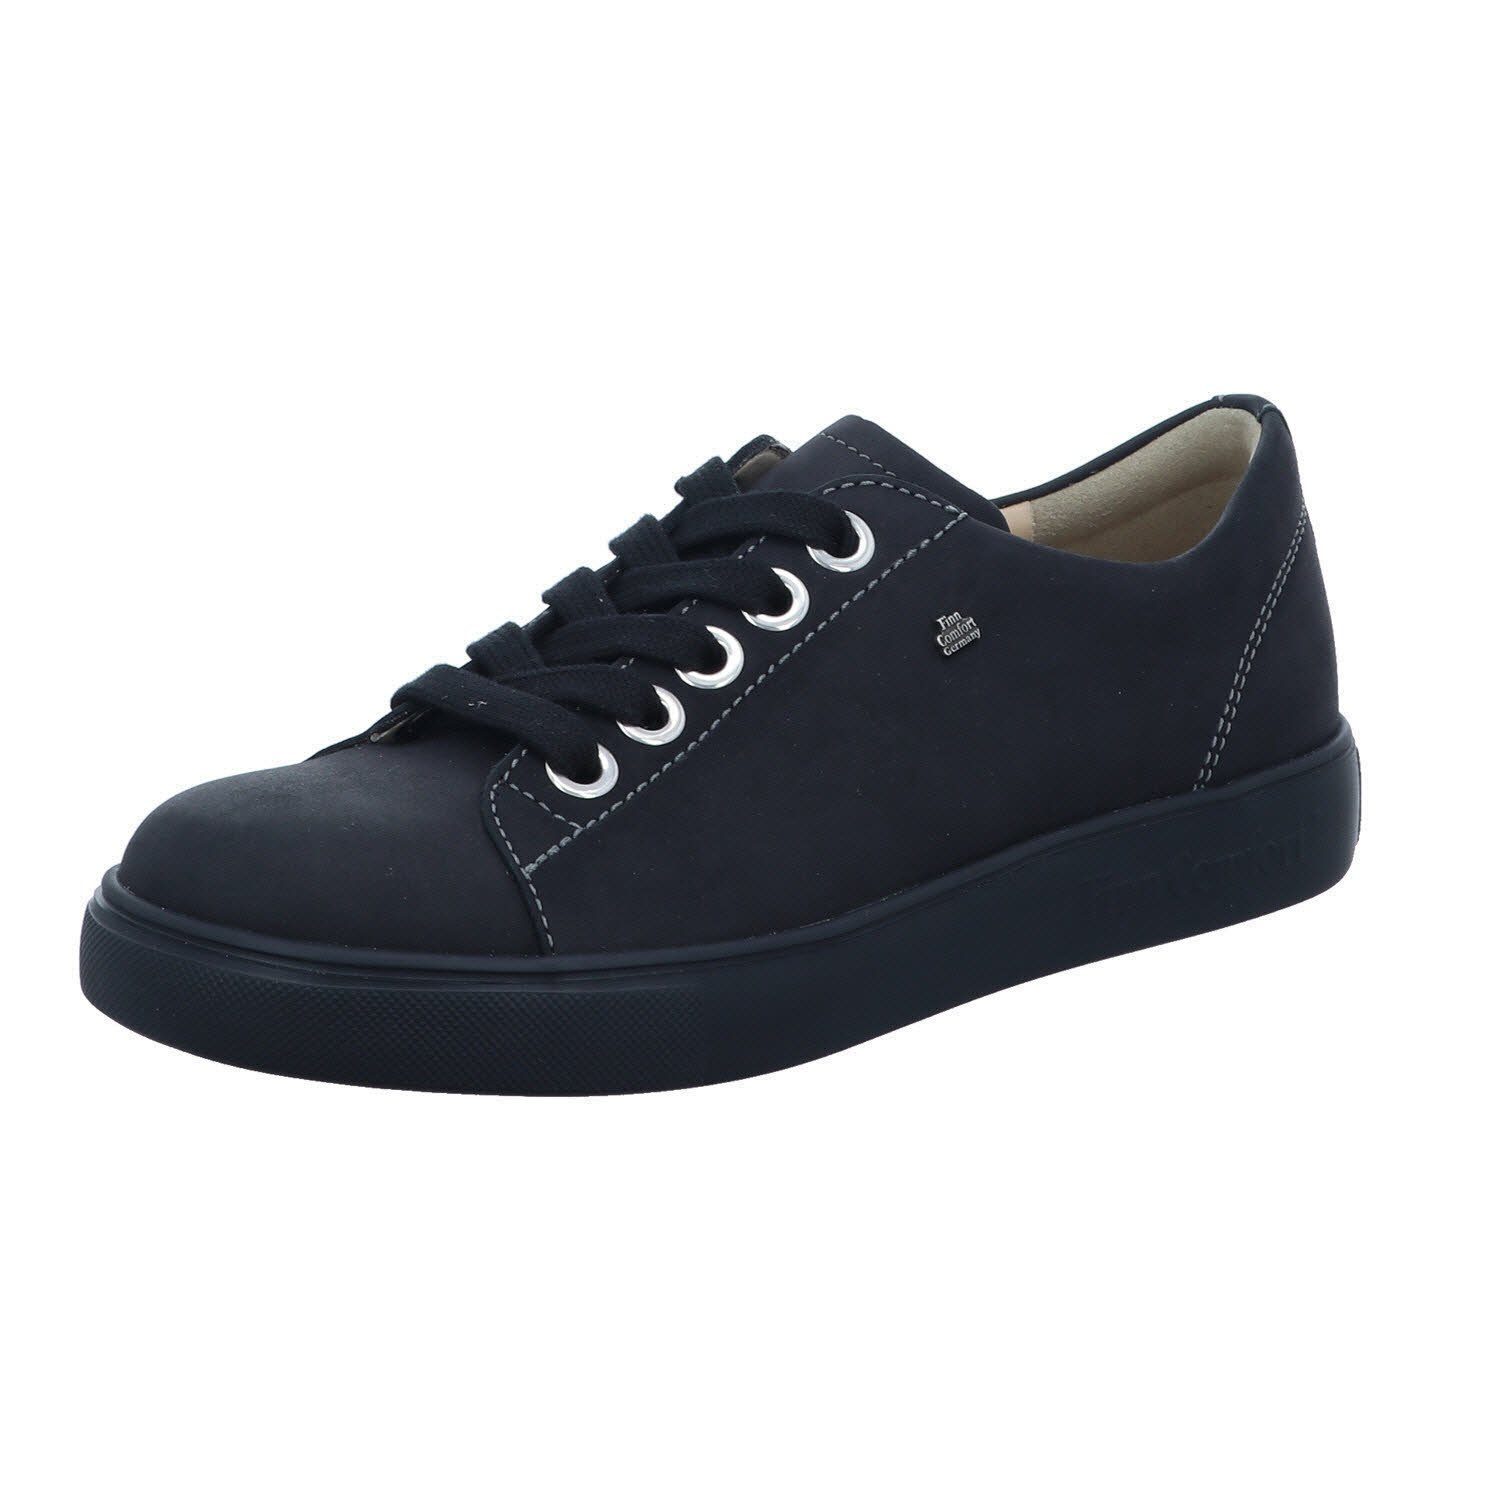 Finn Sneaker black Comfort